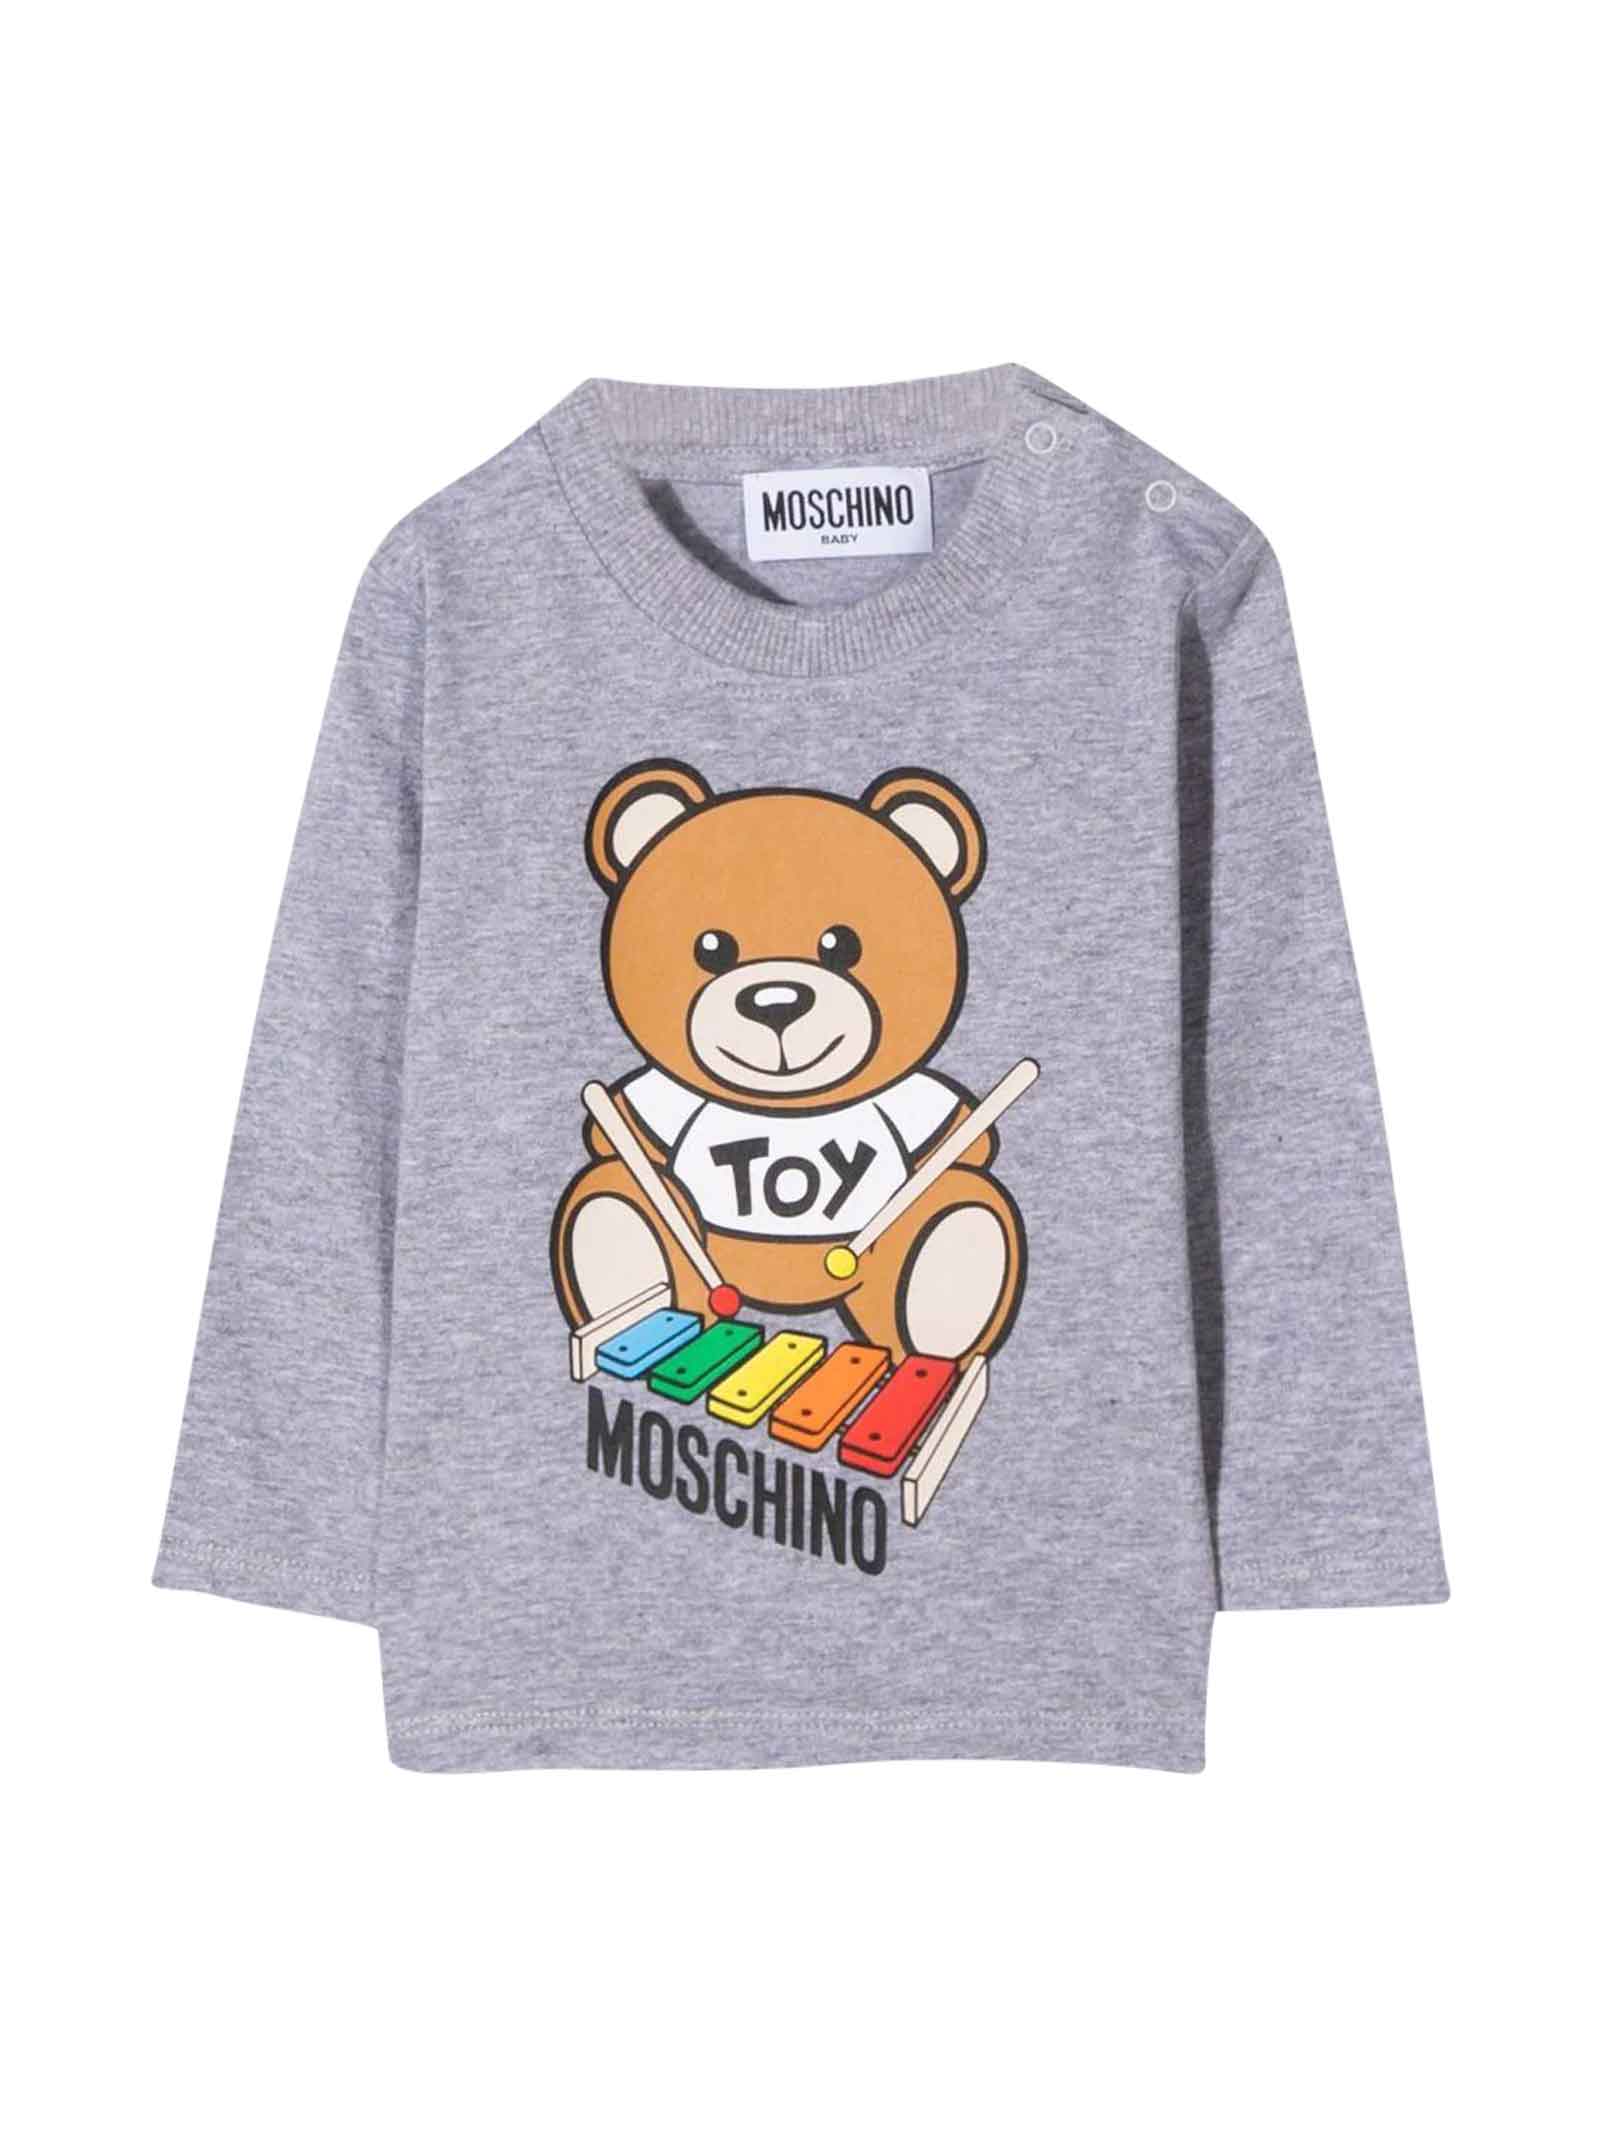 Moschino Unisex Gray T-shirt